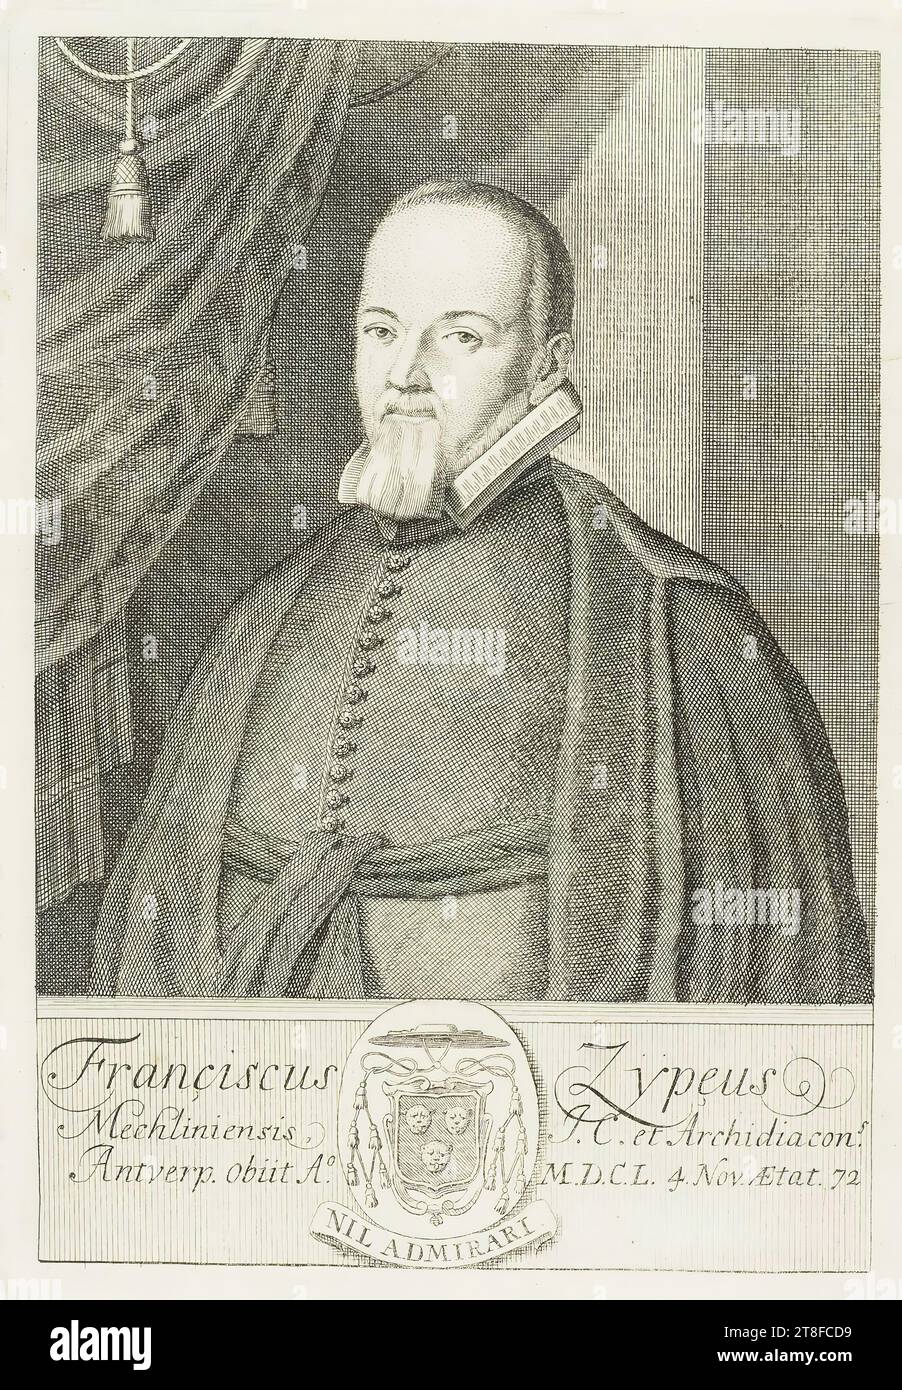 Franciscus Zypeus, Mechliniensis J.C. und Erzdiakone, Antwerpen A° starben. M.D.C.L. 4. November 72. Nichts zu bewundernswert Stockfoto